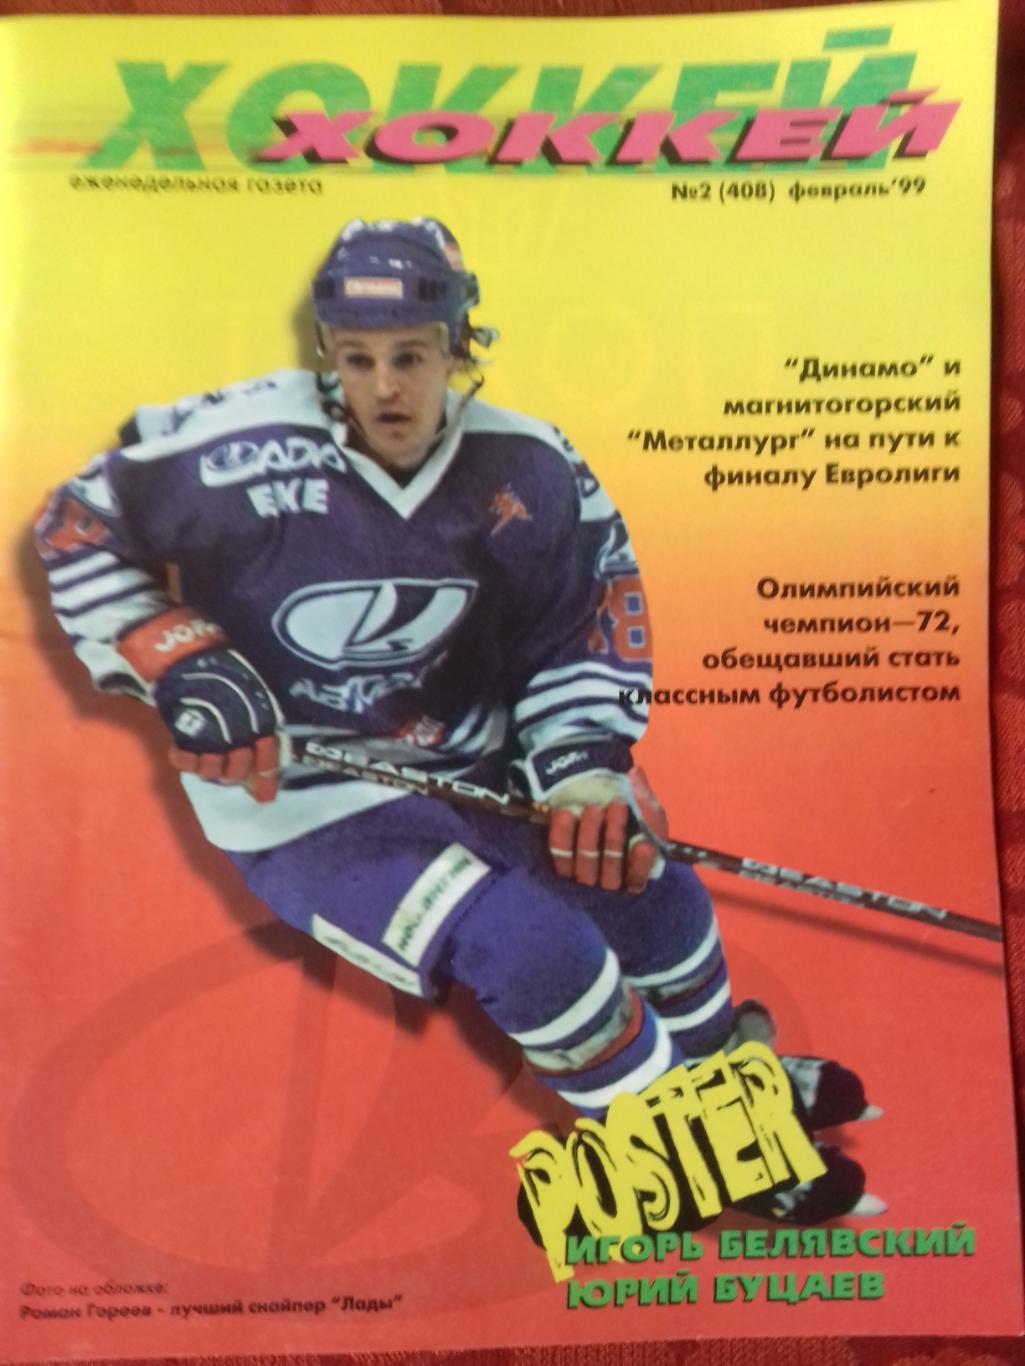 Еженедельник Хоккей №2 1999г.